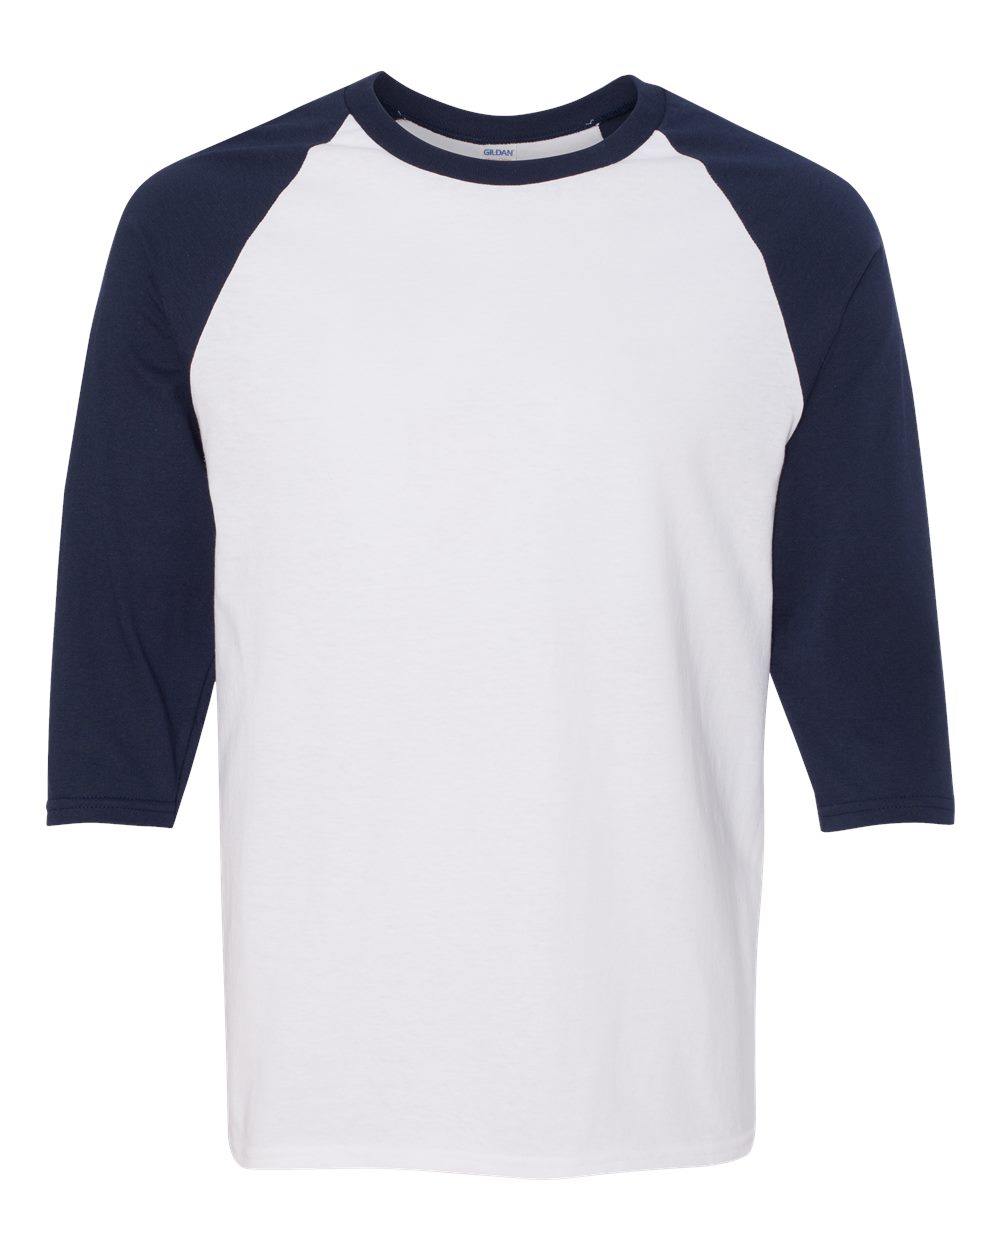 Champion Sports Mens NEW Size S M L XL 2XL XXL Tagless RINGER T-Shirts 14 Colors 